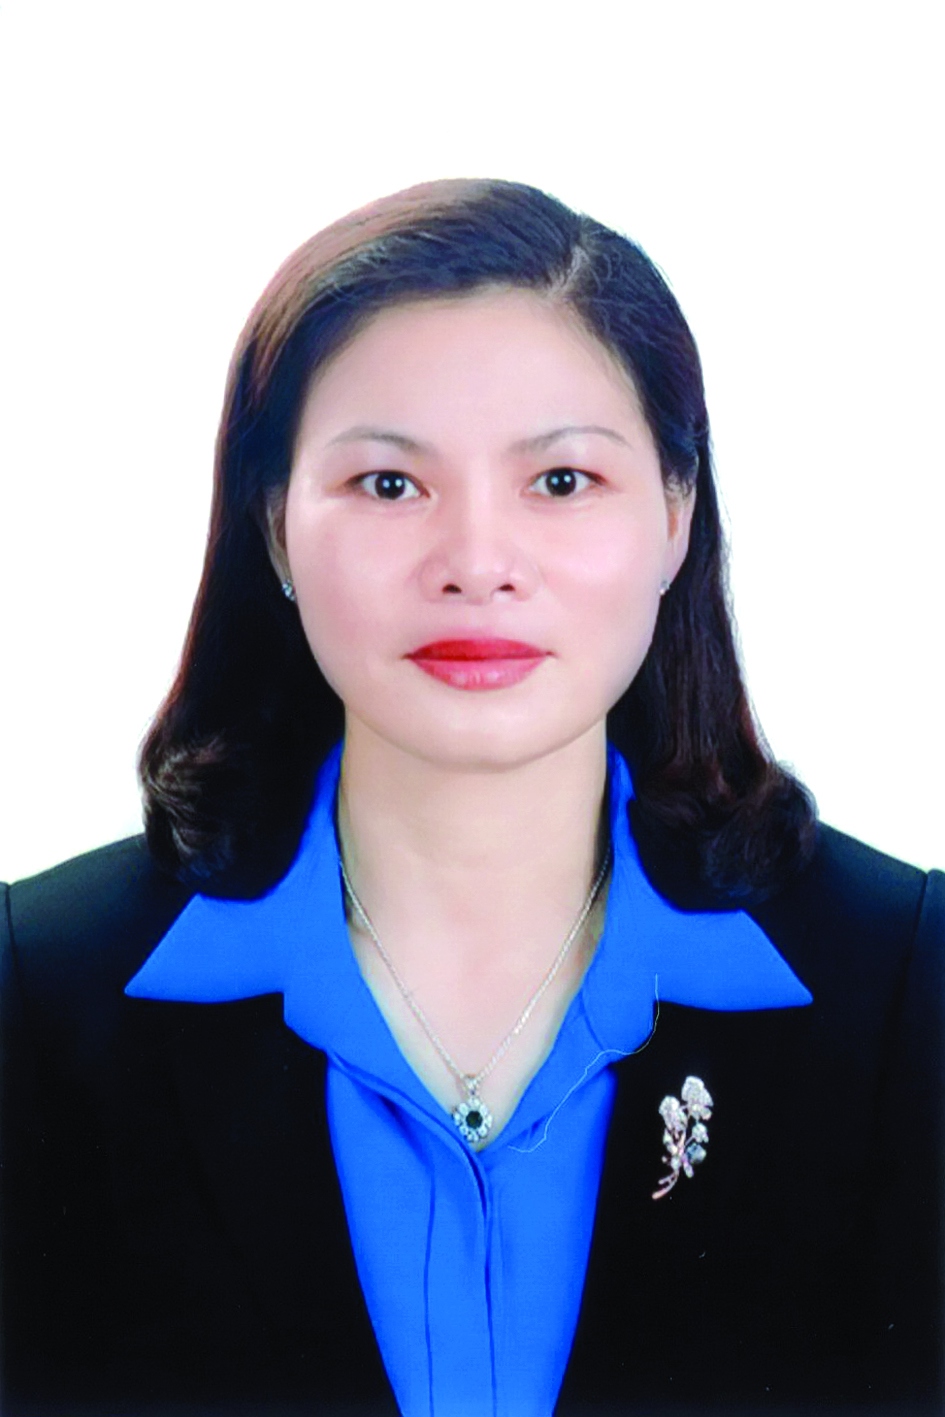 Chương trình hành động của bà Hoàng Thị Tú Anh, ứng cử viên đại biểu HĐND TP Hà Nội nhiệm kỳ 2021 - 2026 - Ảnh 1